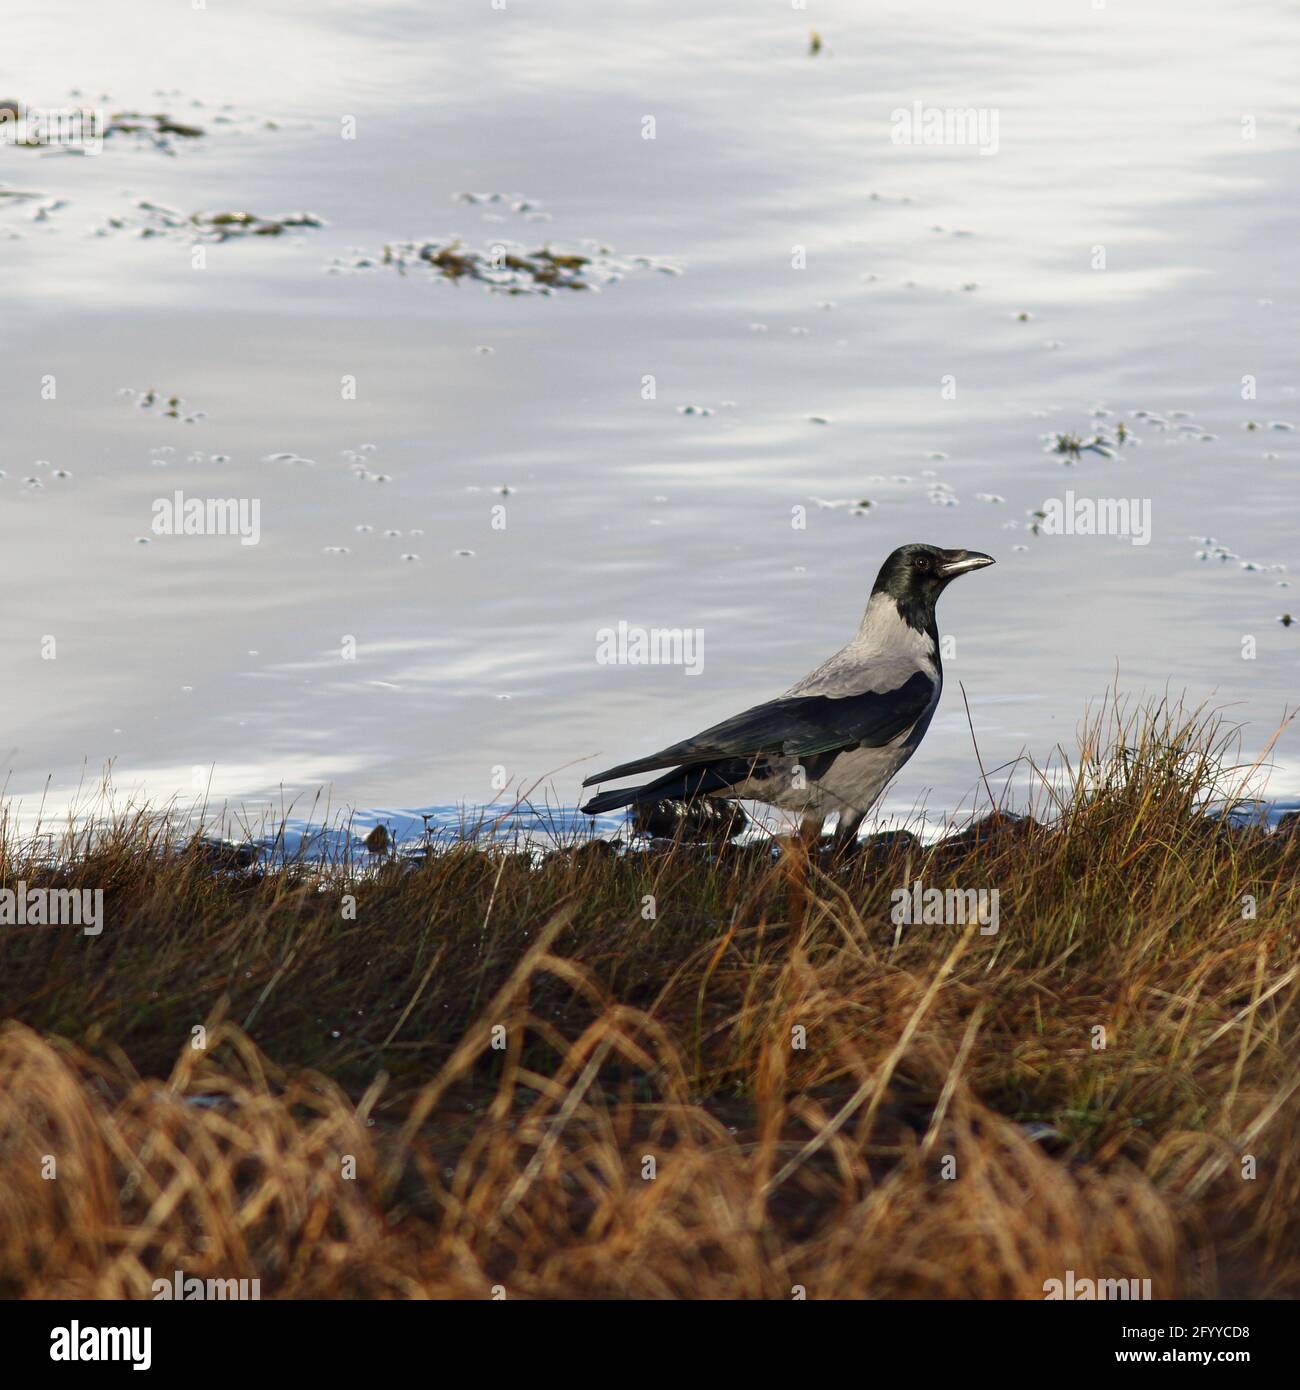 Cornix Corvus, corvo Hooded un uccello degli altipiani remoti, in piedi in erba ruvida, insieme con neve dietro, in modo da rendere l'immagine idea per il testo intorno ad esso. Foto Stock